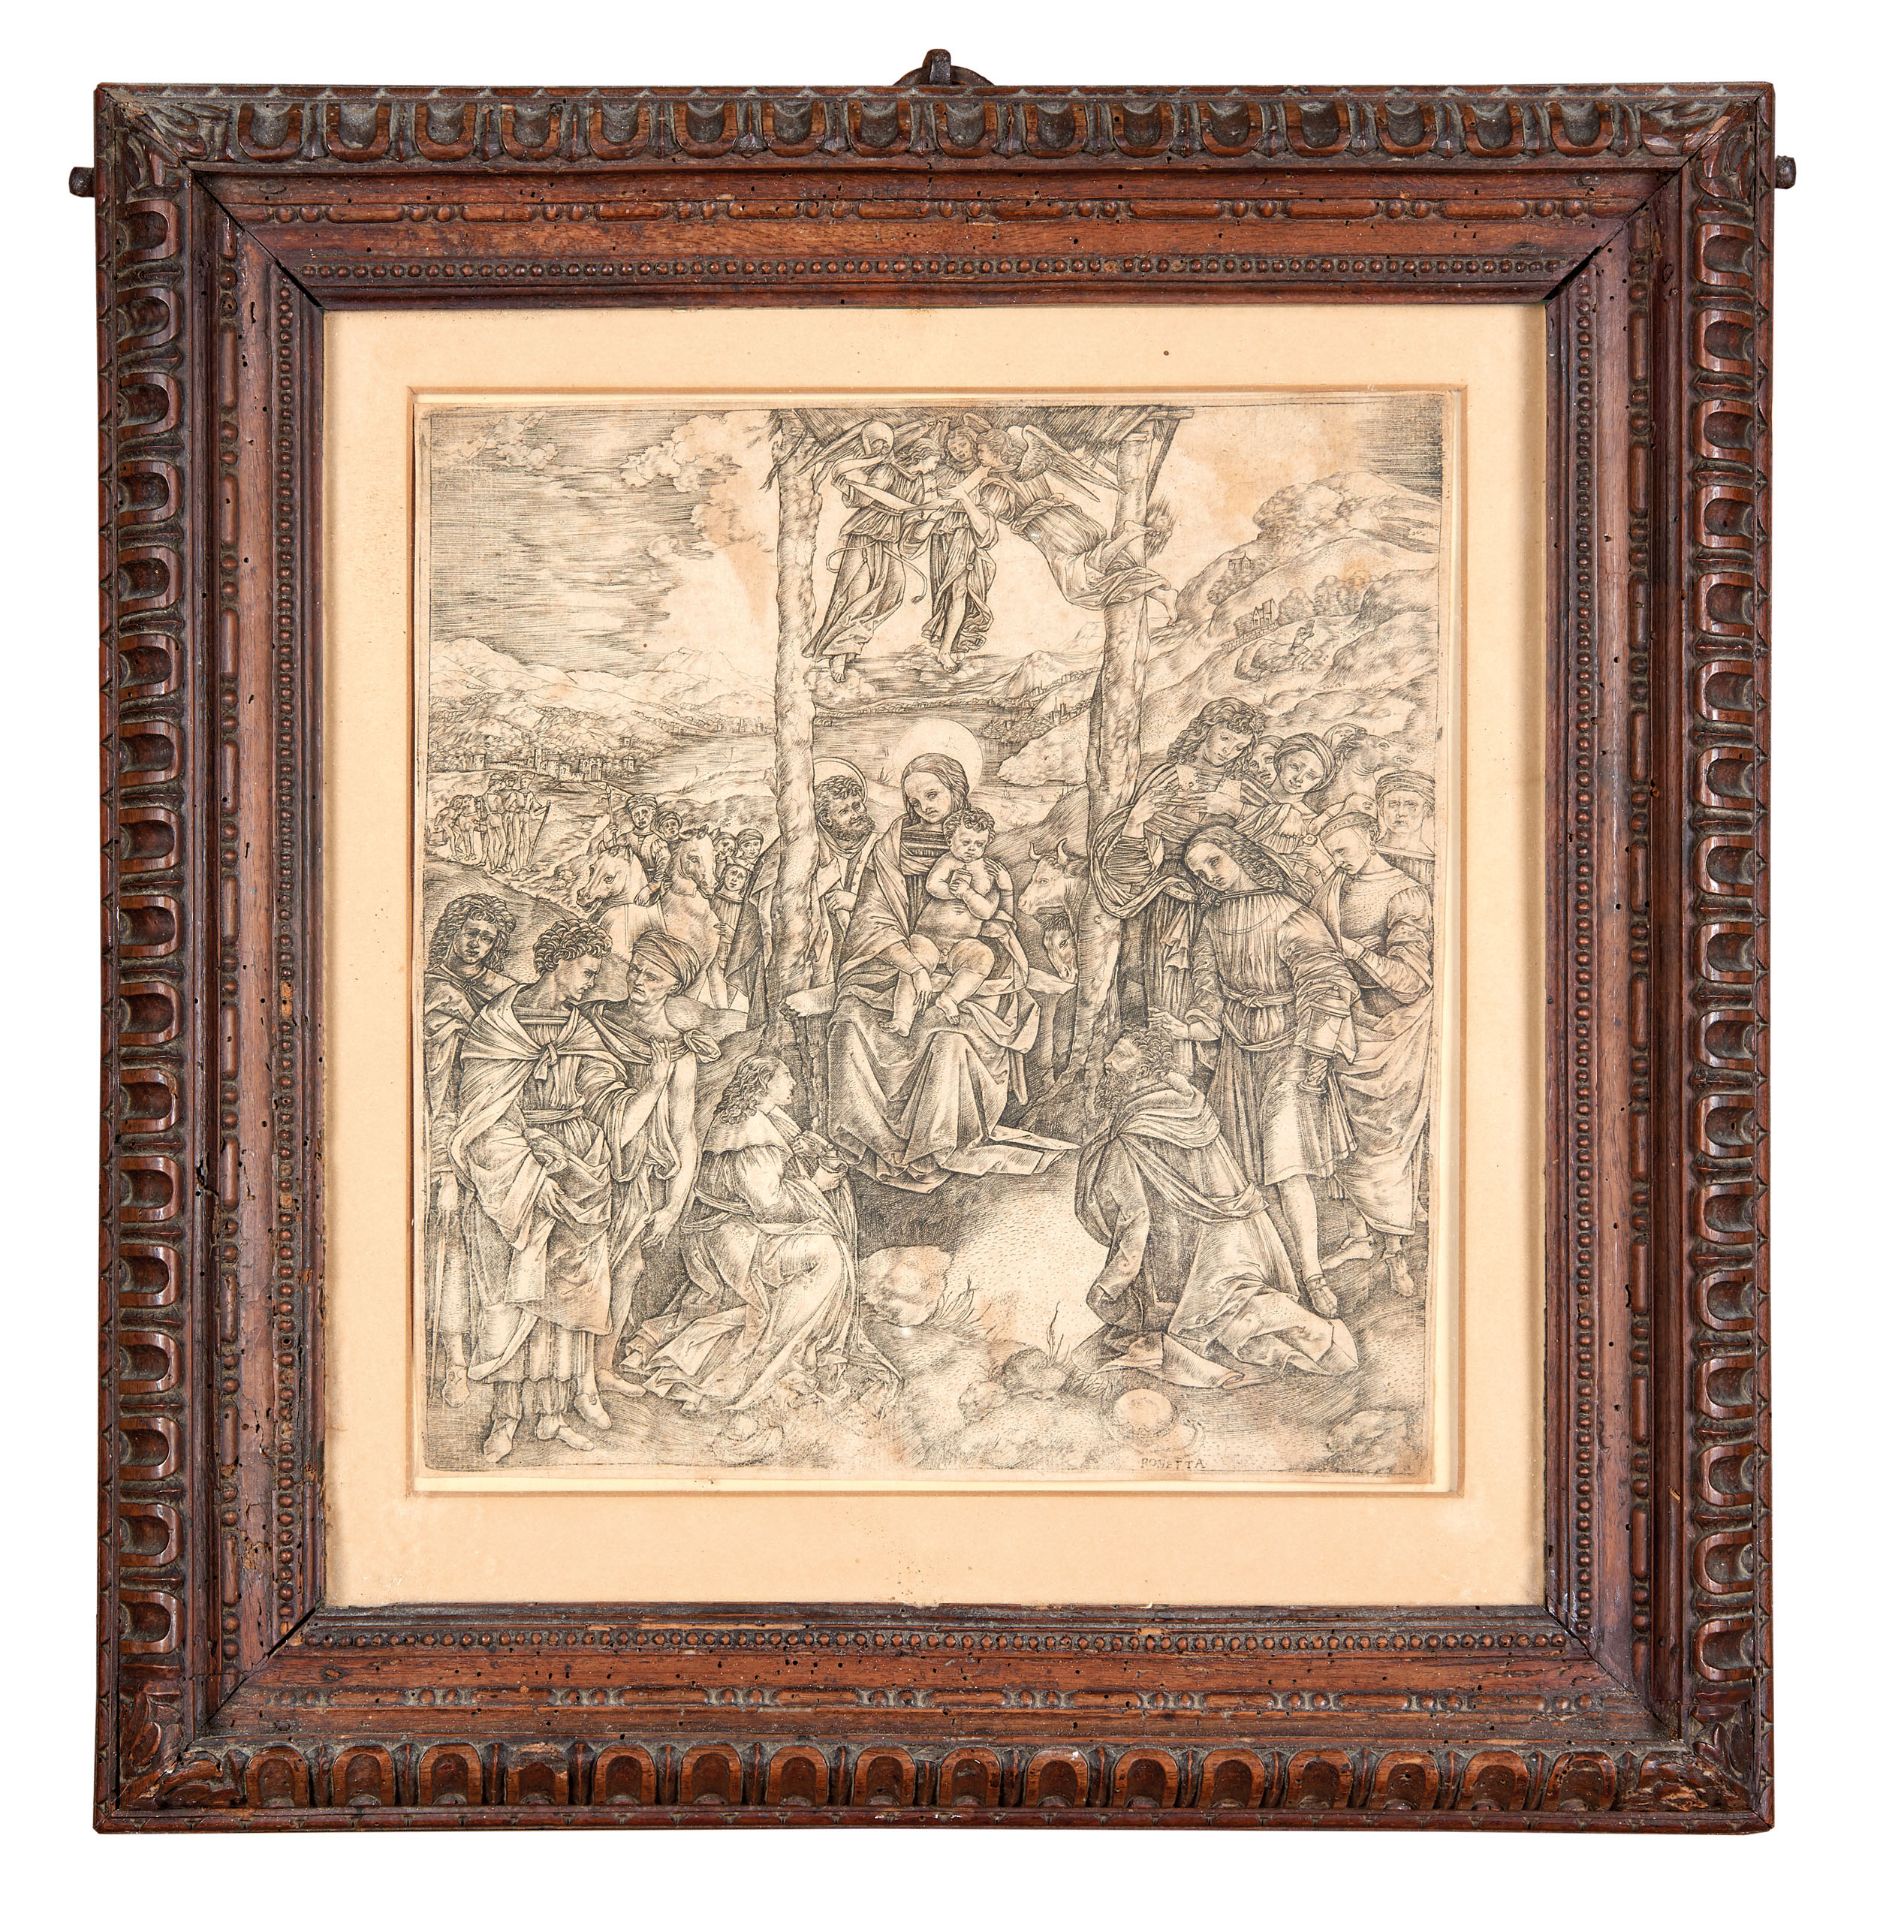 ROBETTA, Cristofano (1462-1535) by FILIPPINO LIPPI (1457-1504). The Adoration of the Magi,